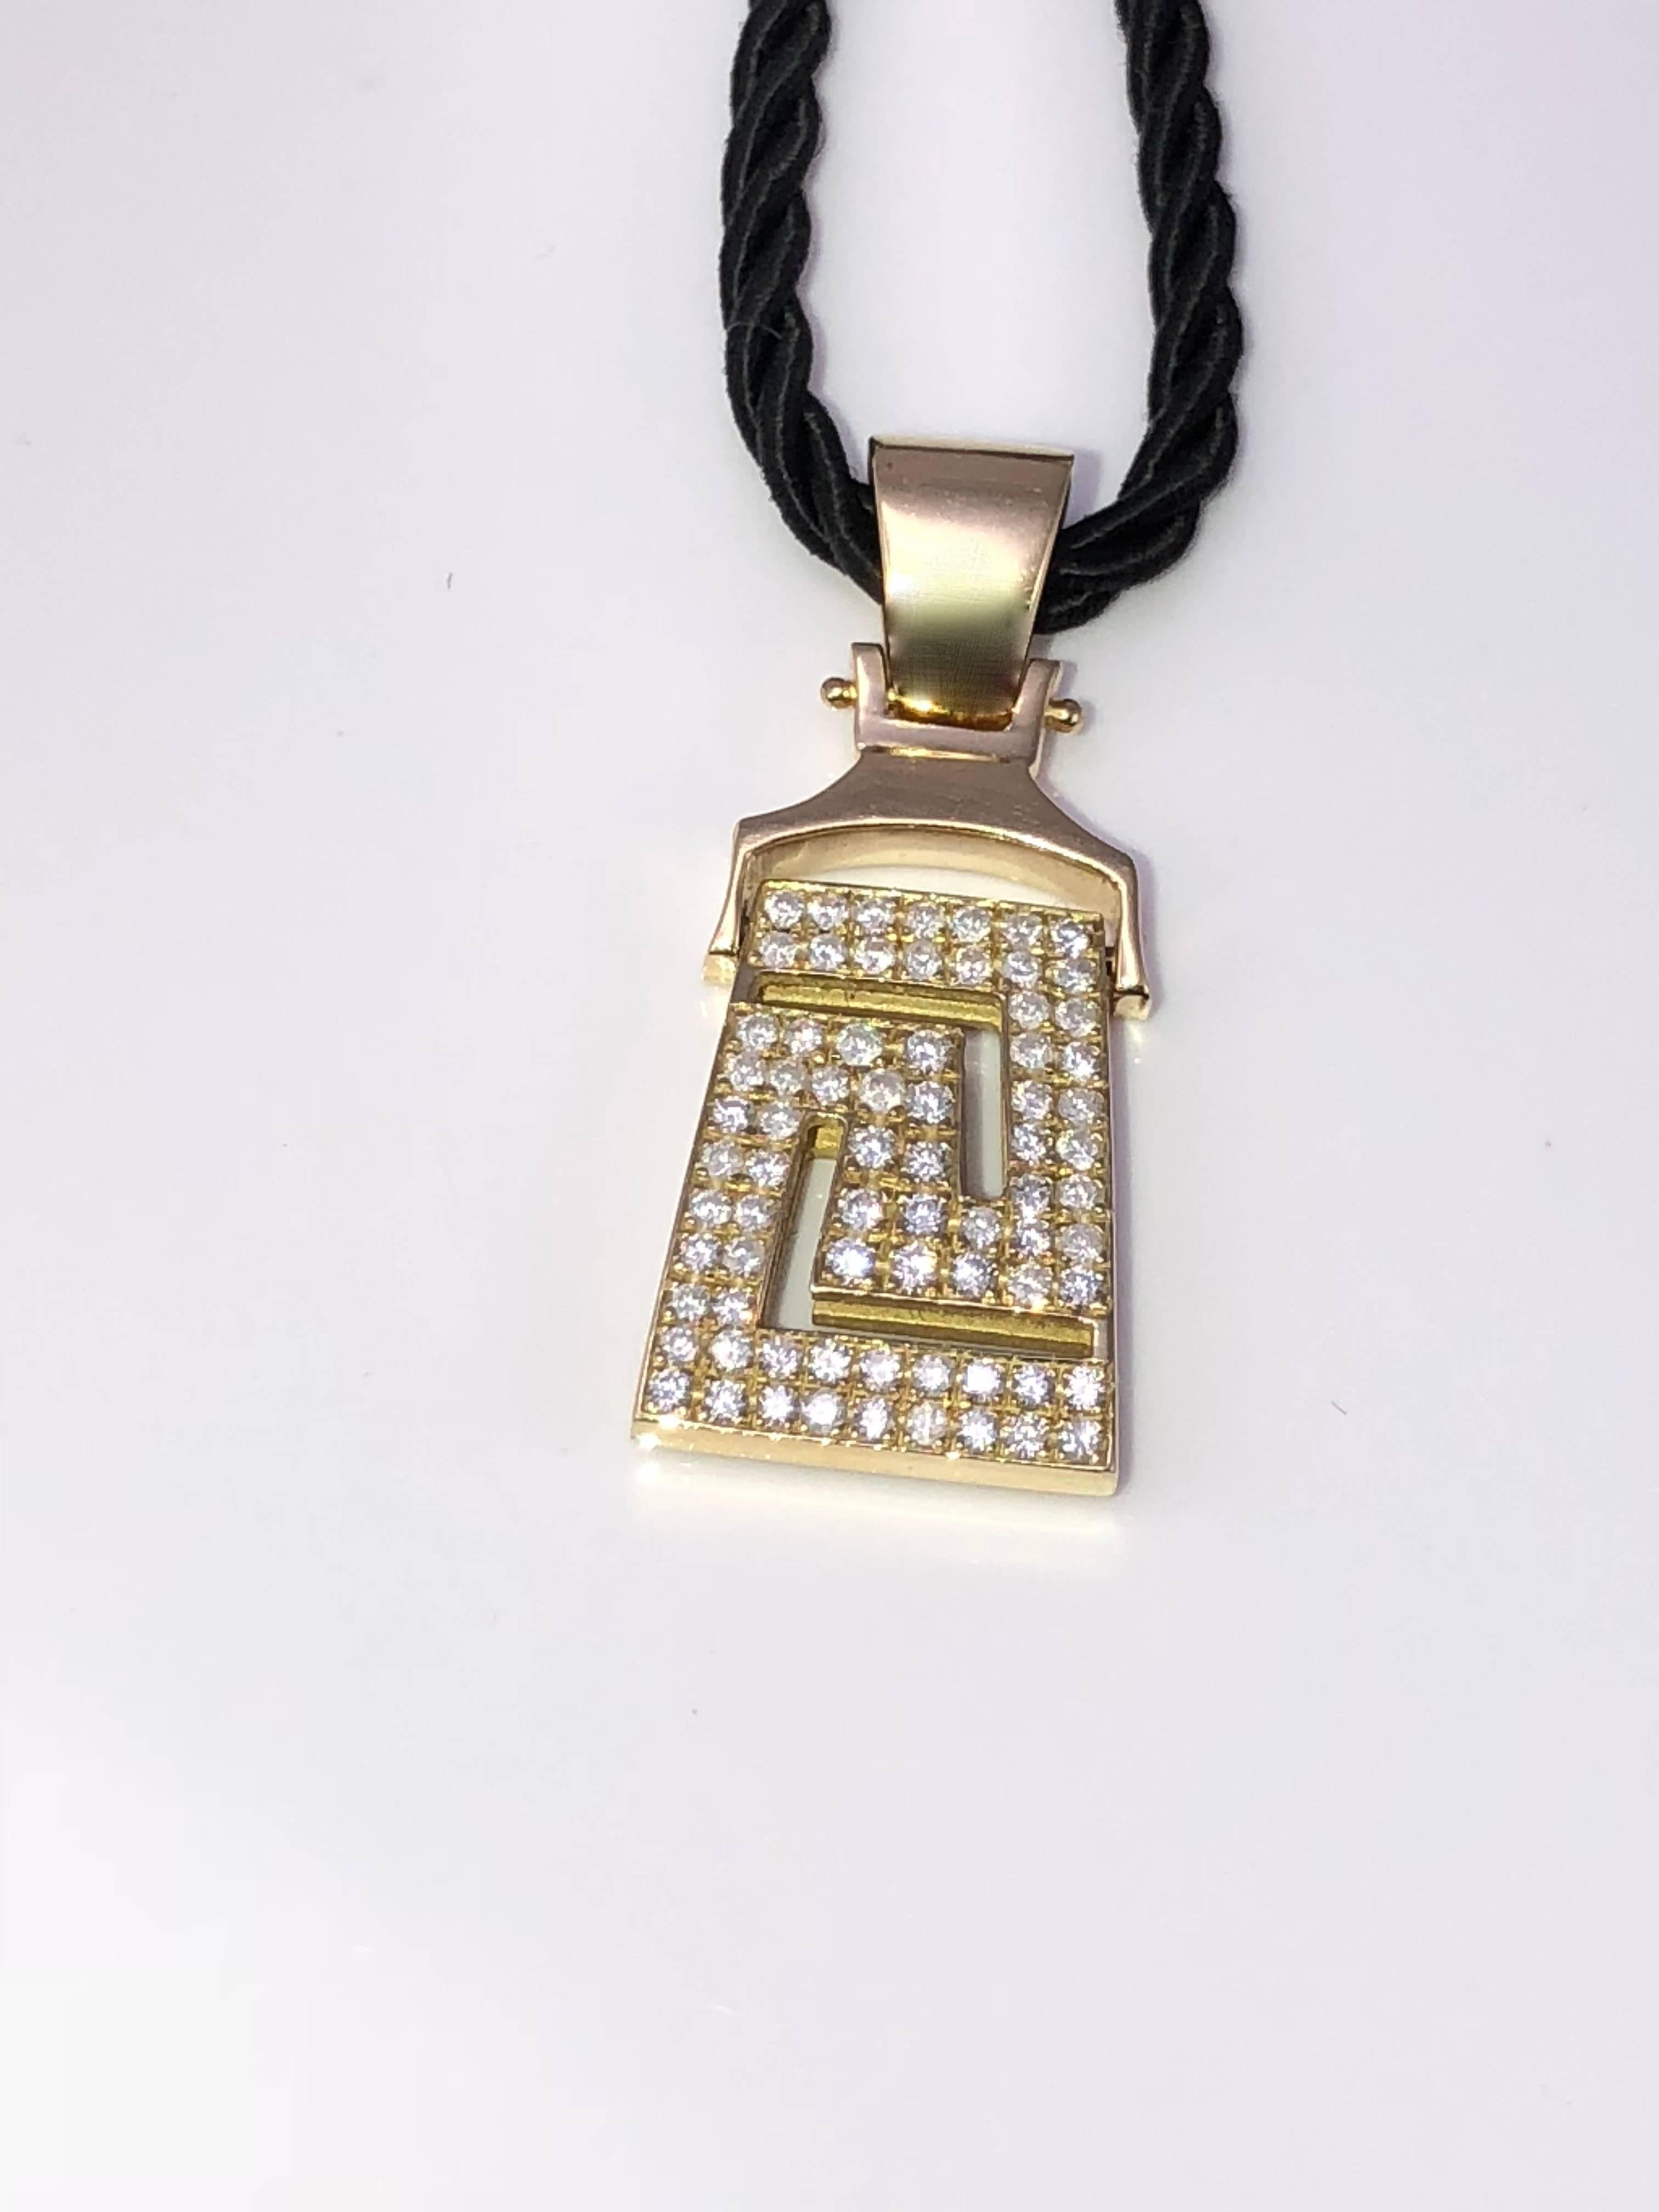 S.Georgios Designer-Halskette aus 18 Karat Gelbgold mit Diamanten, die den griechischen Schlüssel als Symbol für die Ewigkeit darstellt. Der atemberaubende Anhänger verfügt über weiße Diamanten im Brillantschliff mit einem Gesamtgewicht von 1,04